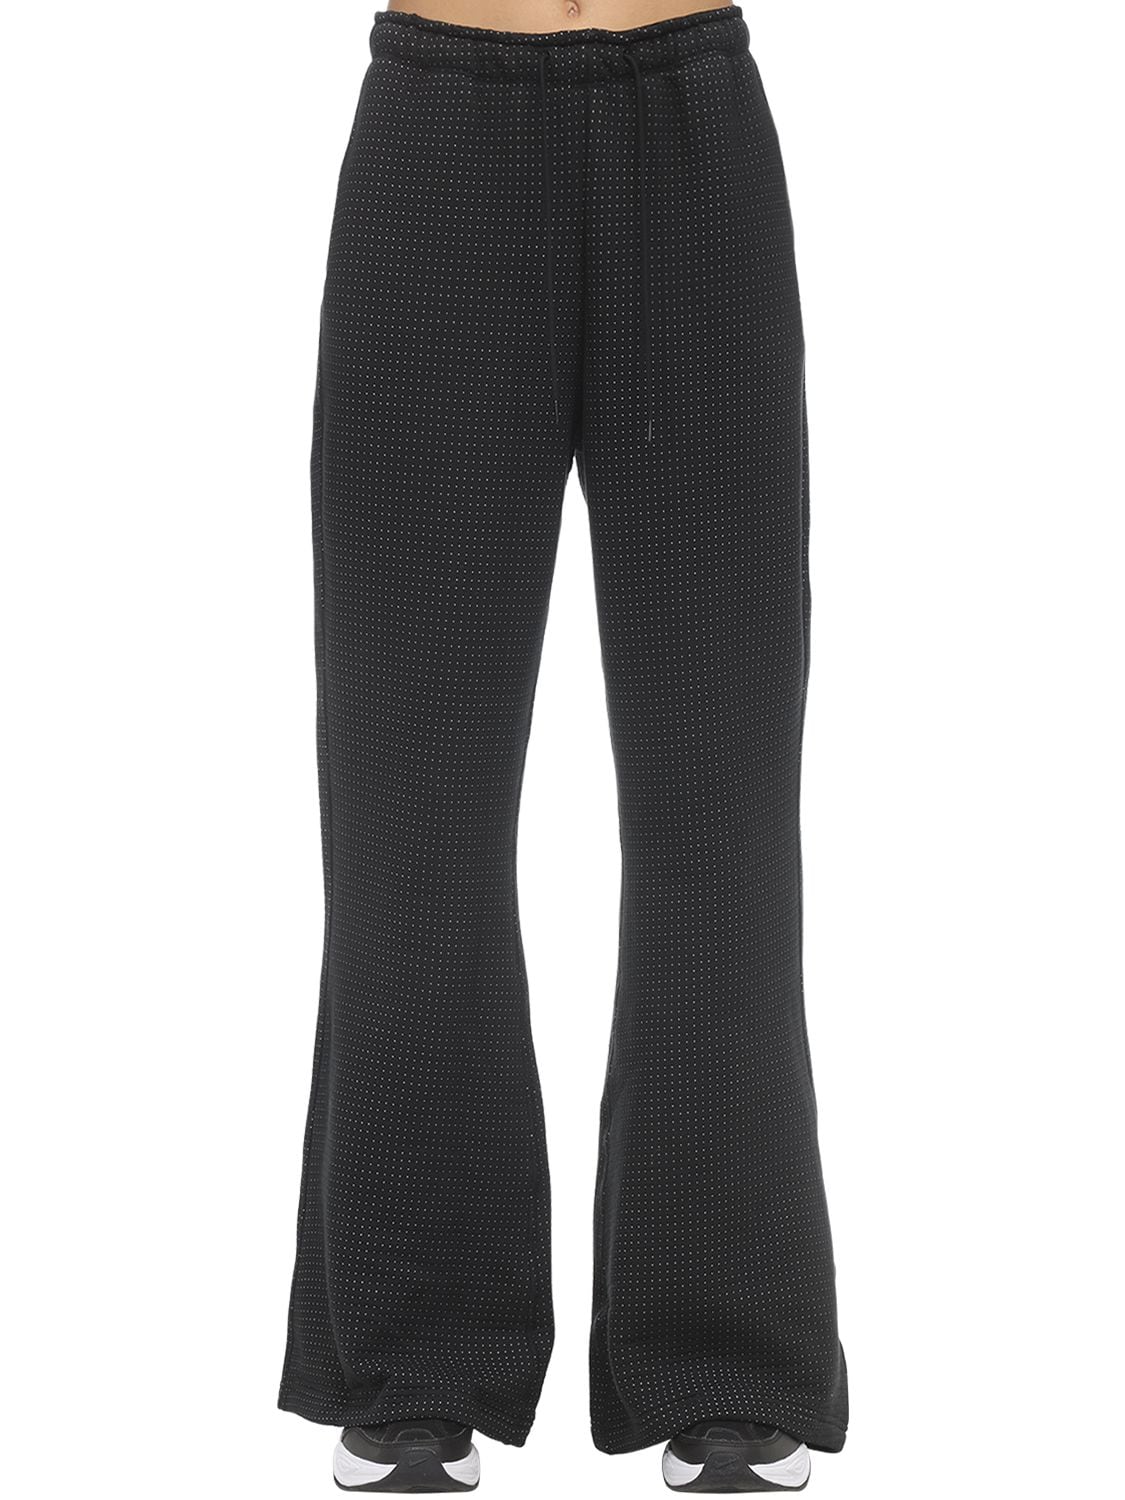 Nike Sportswear Tech Fleece Eng Women's Pants (black) - Clearance Sale